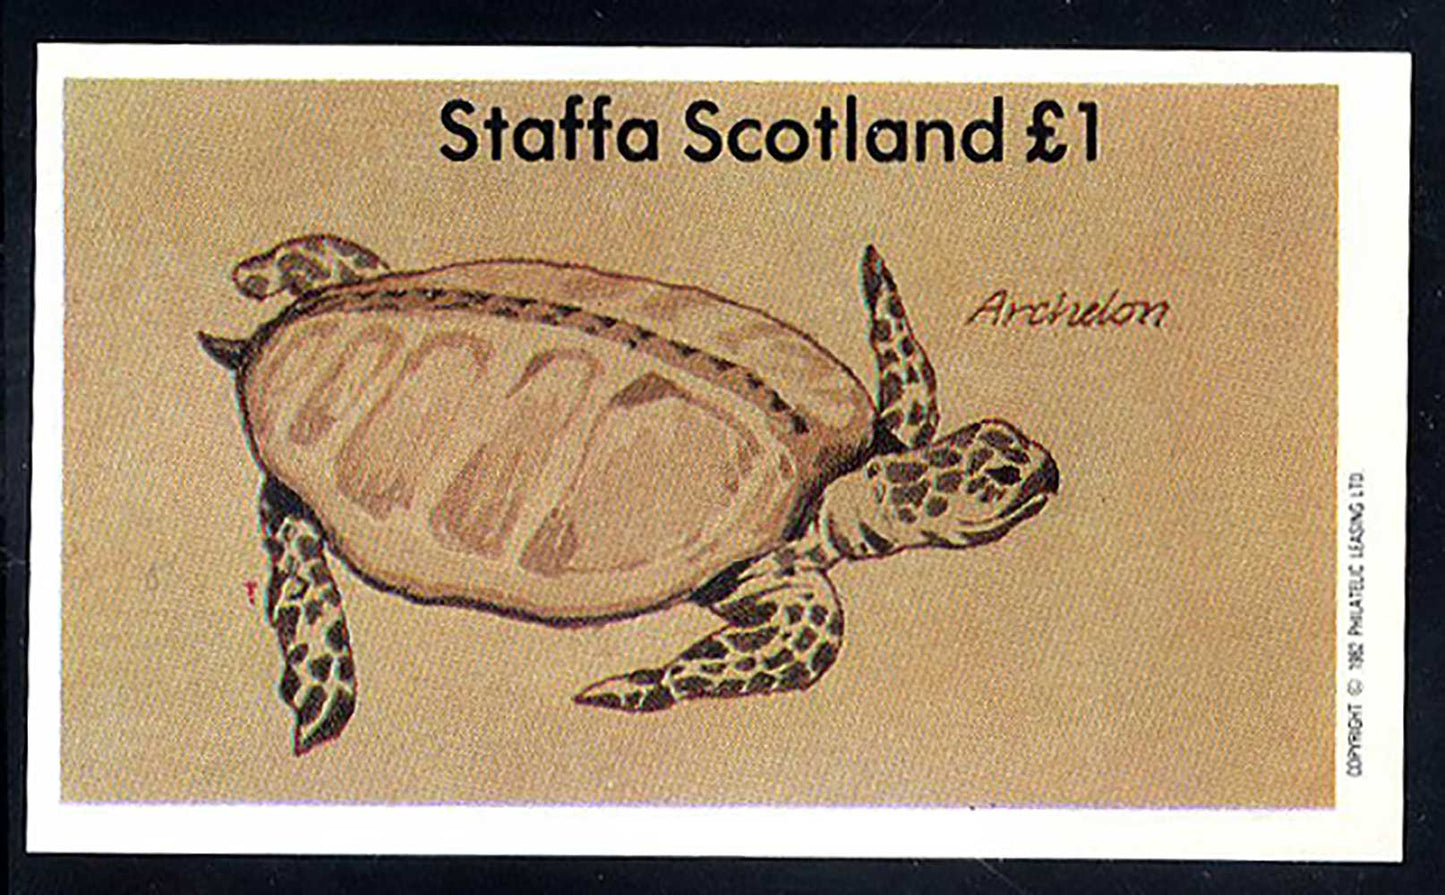 Staffa Prehistoric Reptiles £1